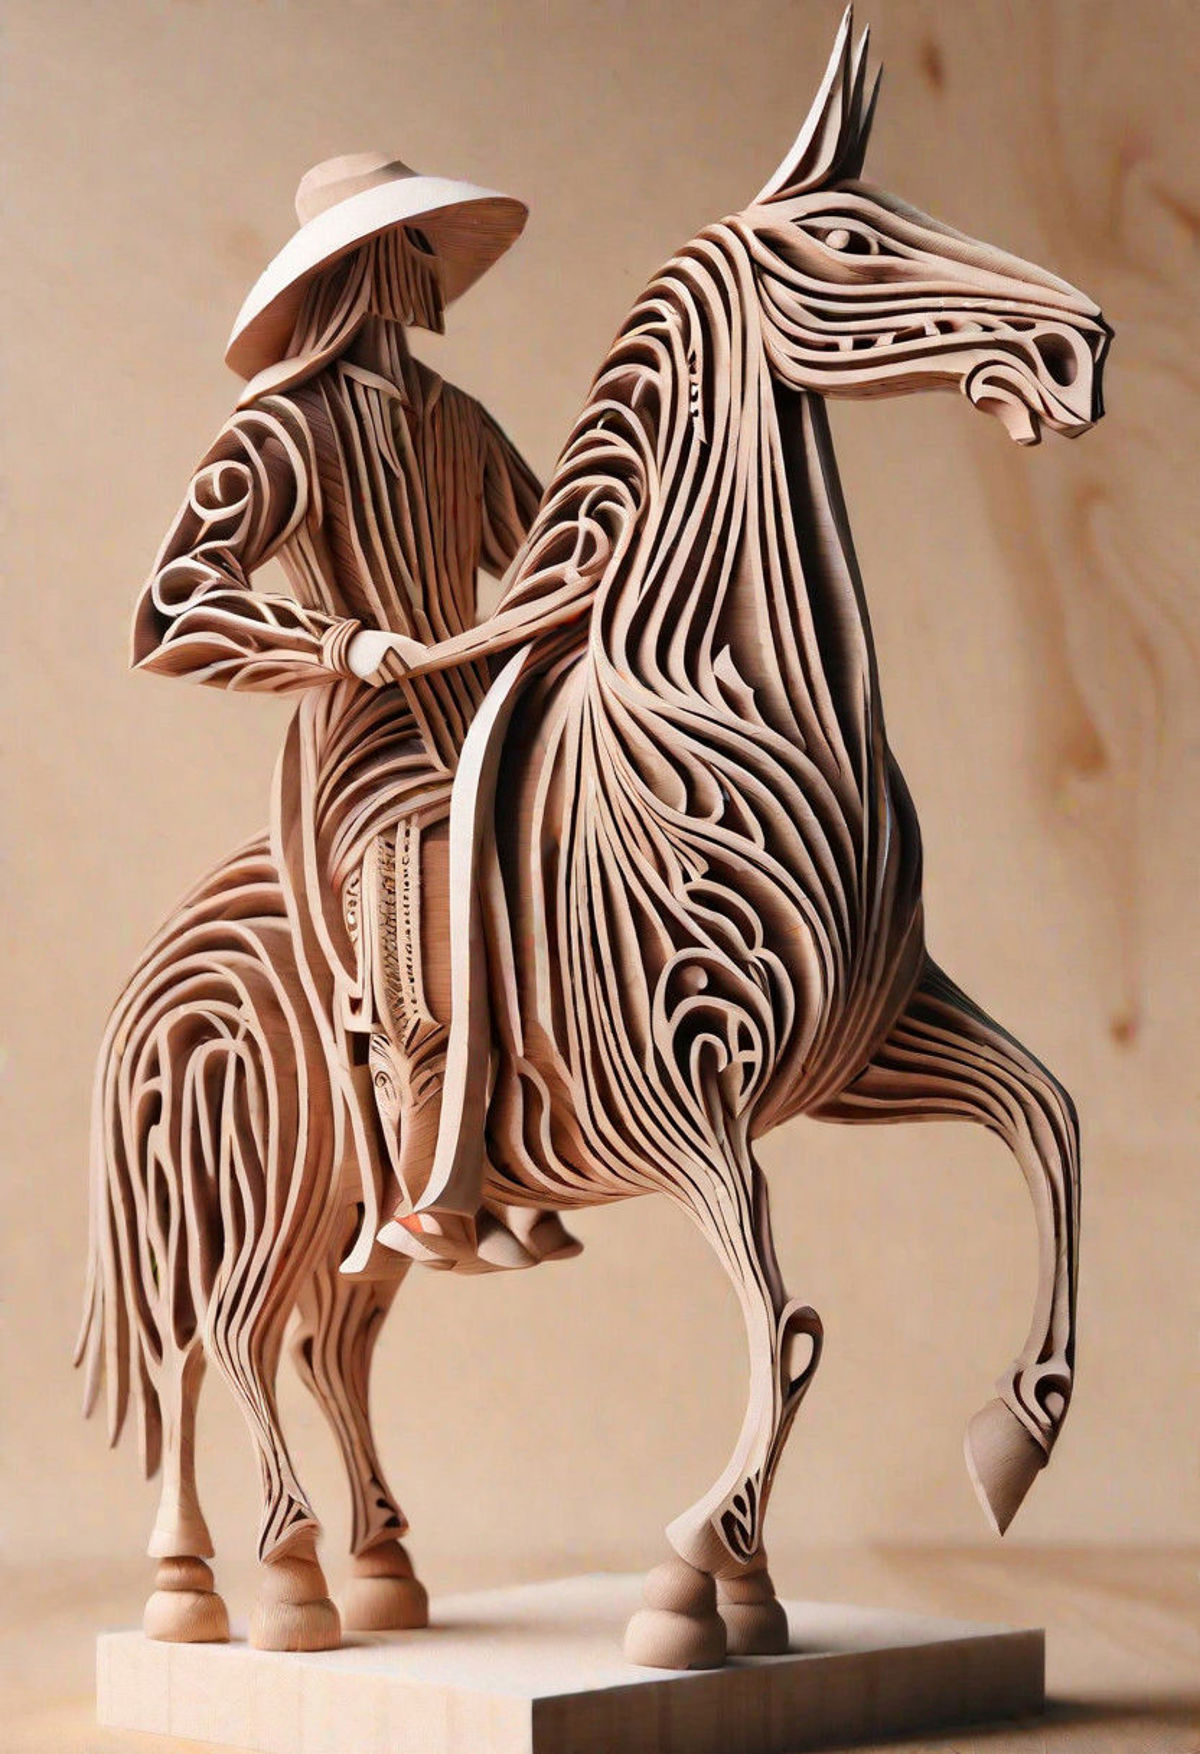 A Wooden Sculpture of a Man Riding a Horse